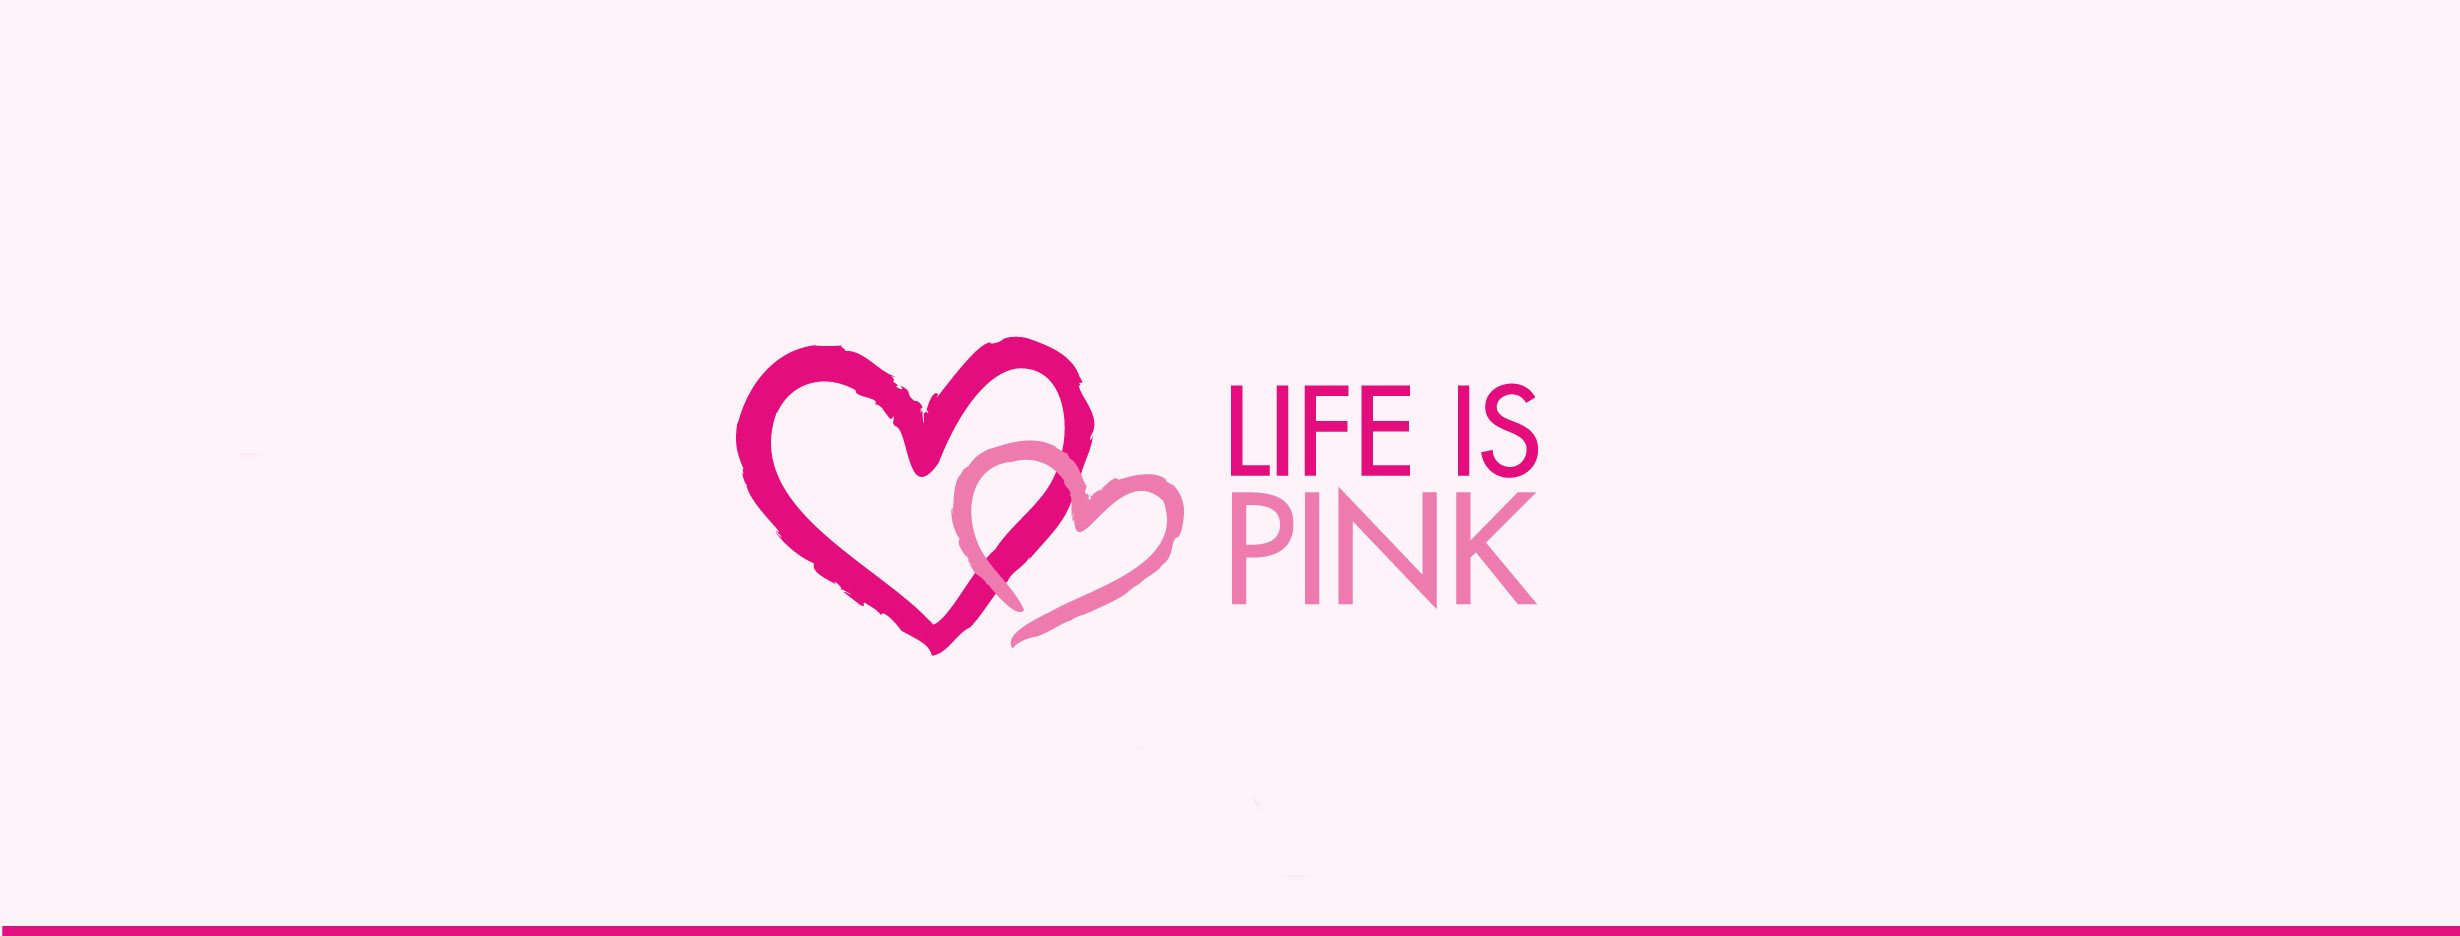 Shop Piemonte sostiene donando il 5% del fatturato di Ottobre la campagna Life is Pink #sostienicandiolo